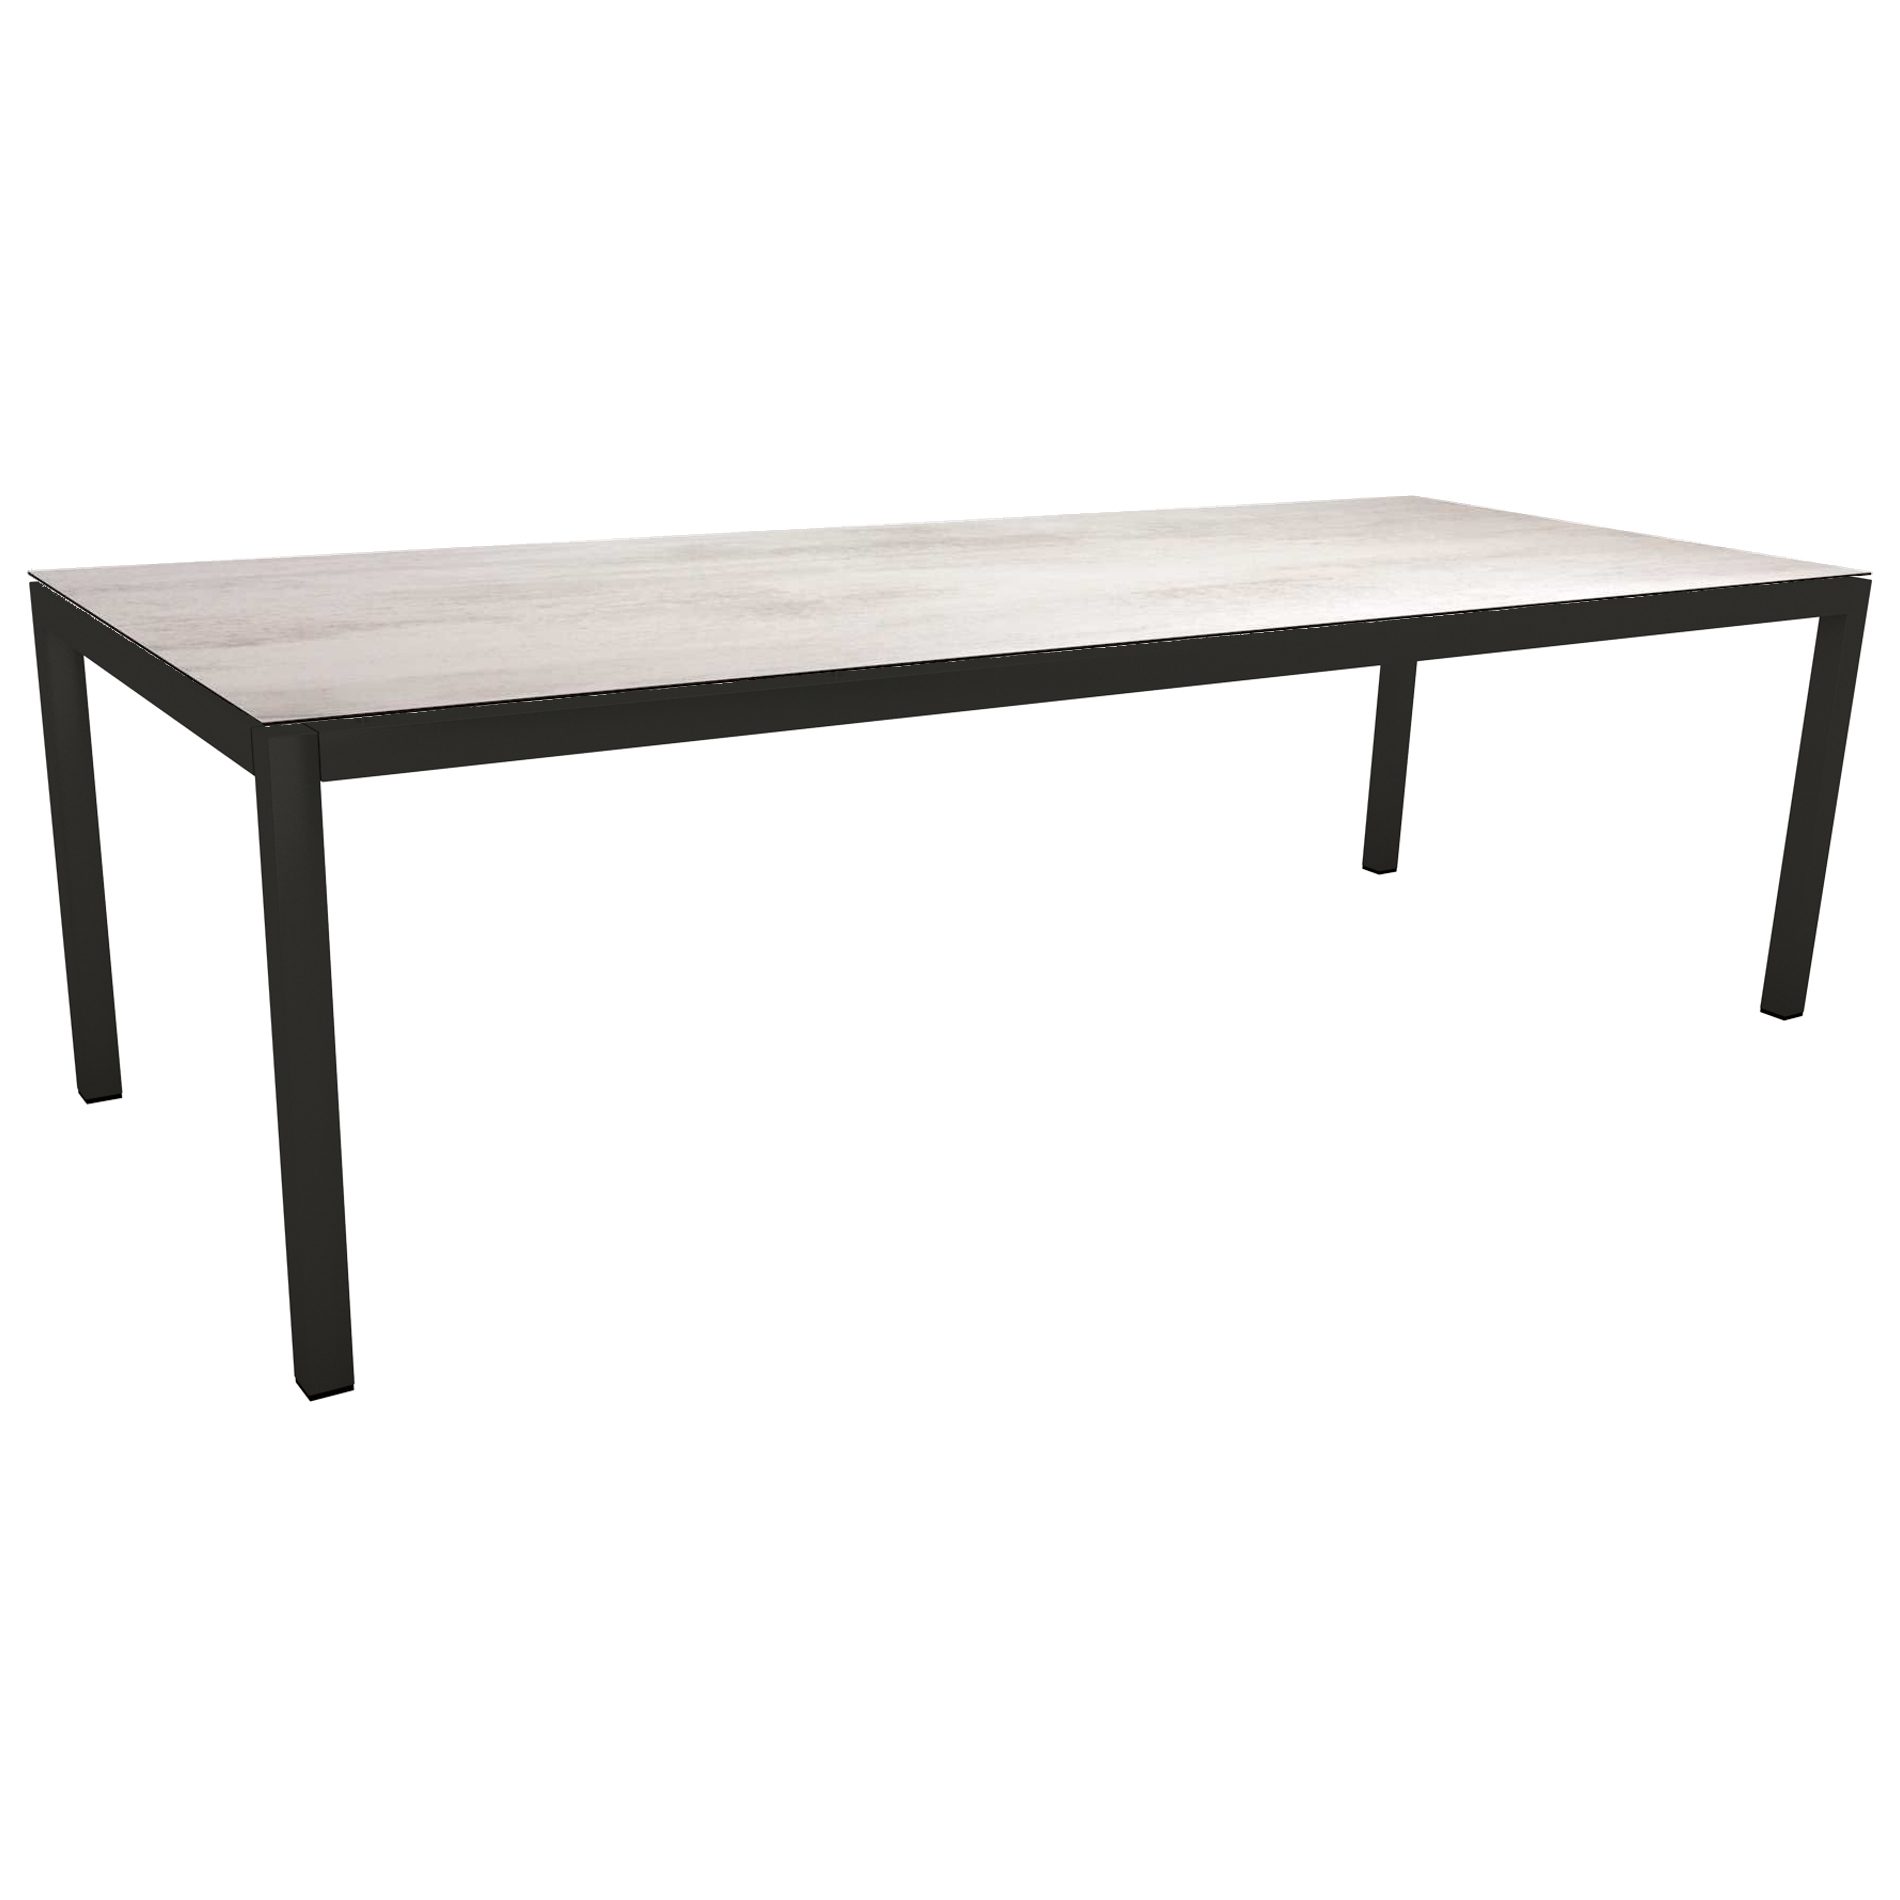 Stern Gartentisch, Gestell Aluminium schwarz matt, Tischplatte HPL Zement hell, 250x100cm